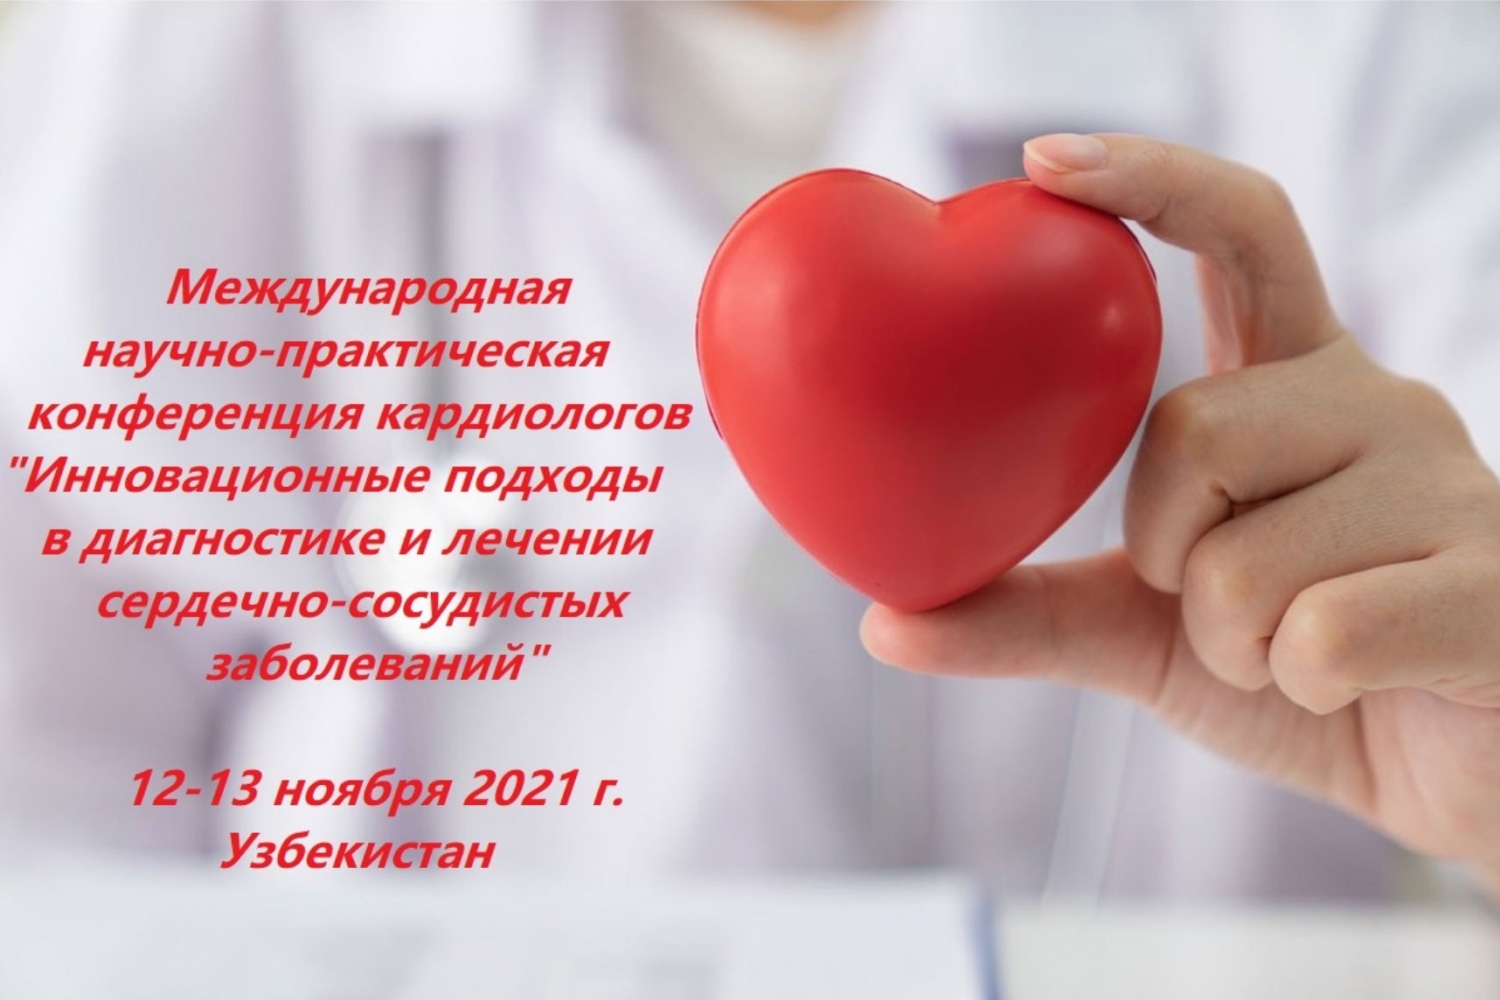 Практическая конференция кардиологов с международным участием «Инновационные подходы в диагностике и лечении сердечно-сосудистых заболеваний» - 12 ноября